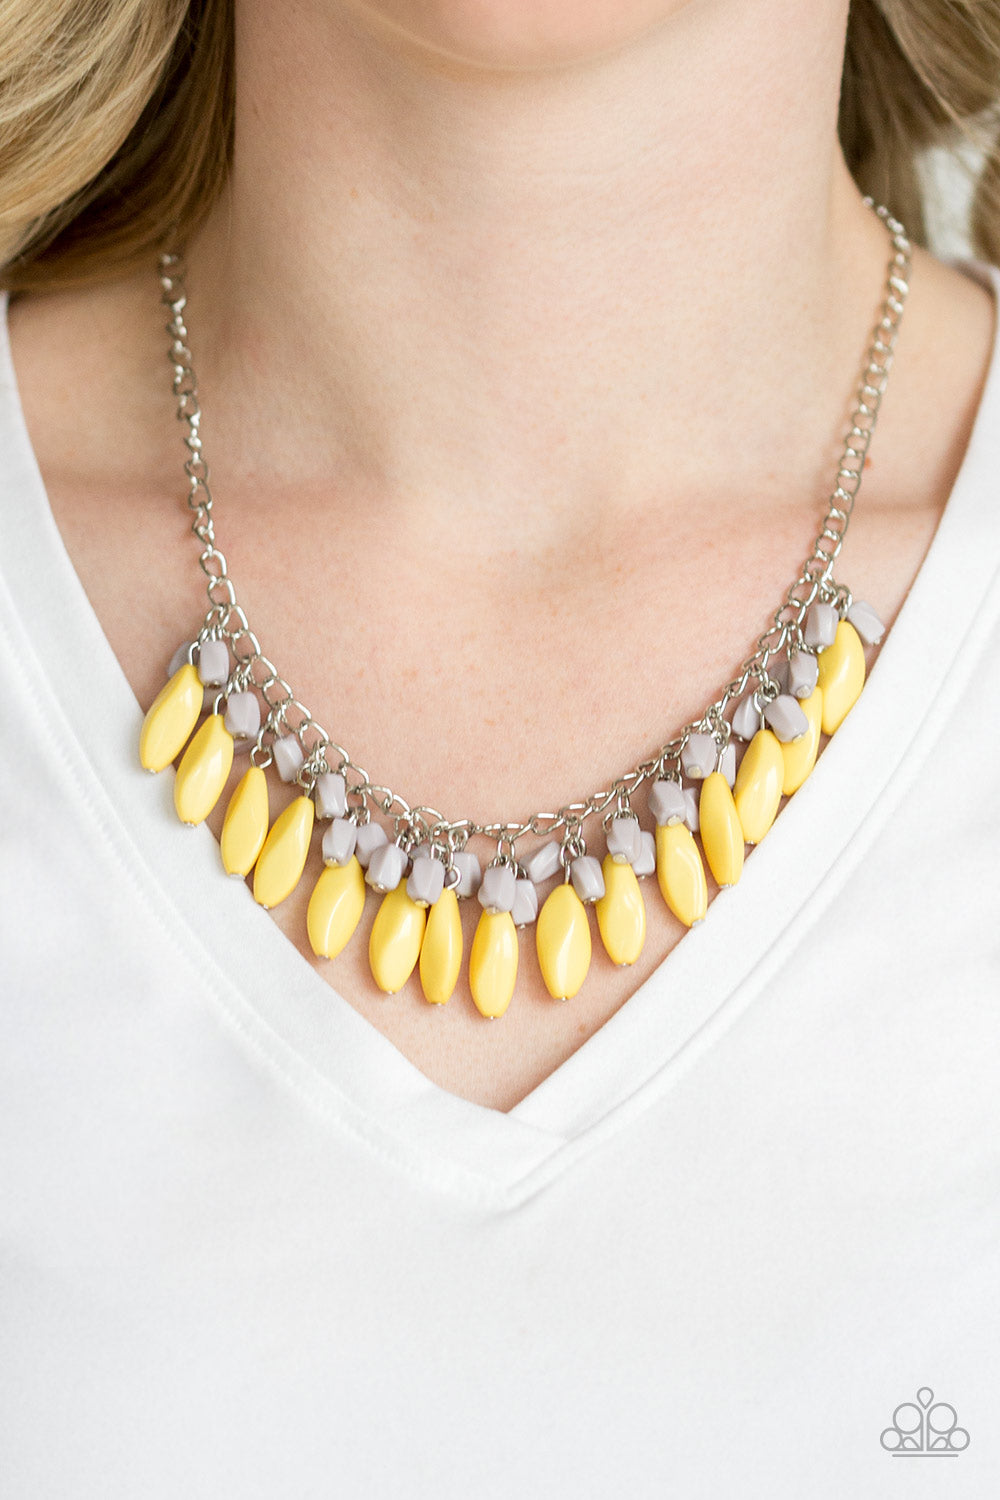 Bead Binge Yellow
Necklace - Daria's Blings N Things